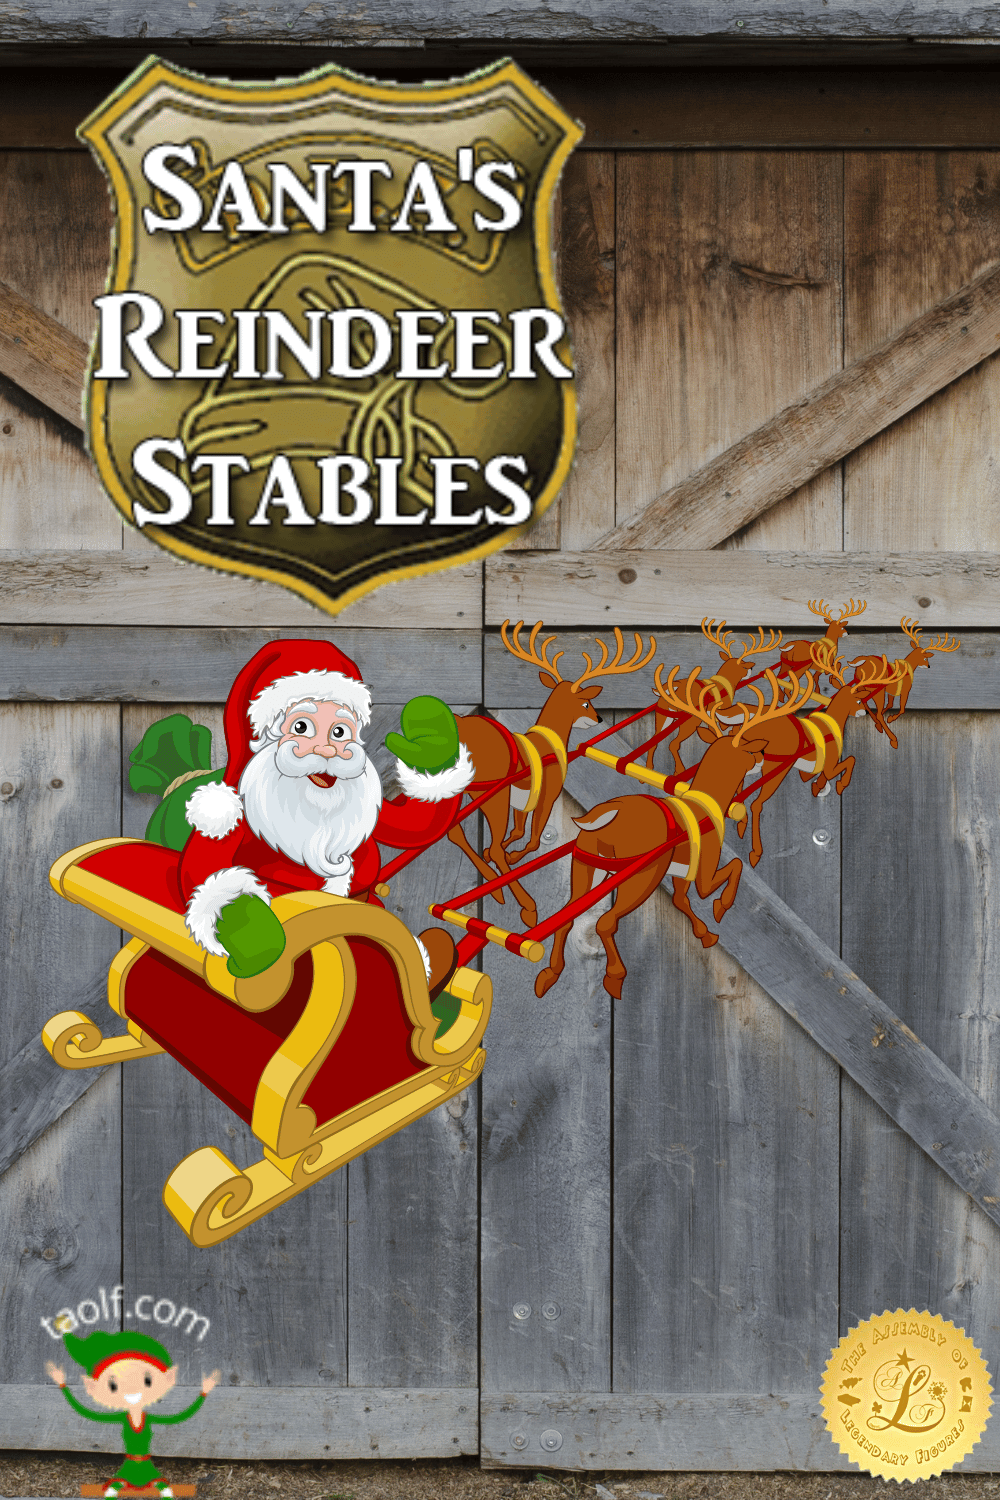 Santa's Reindeer Stables